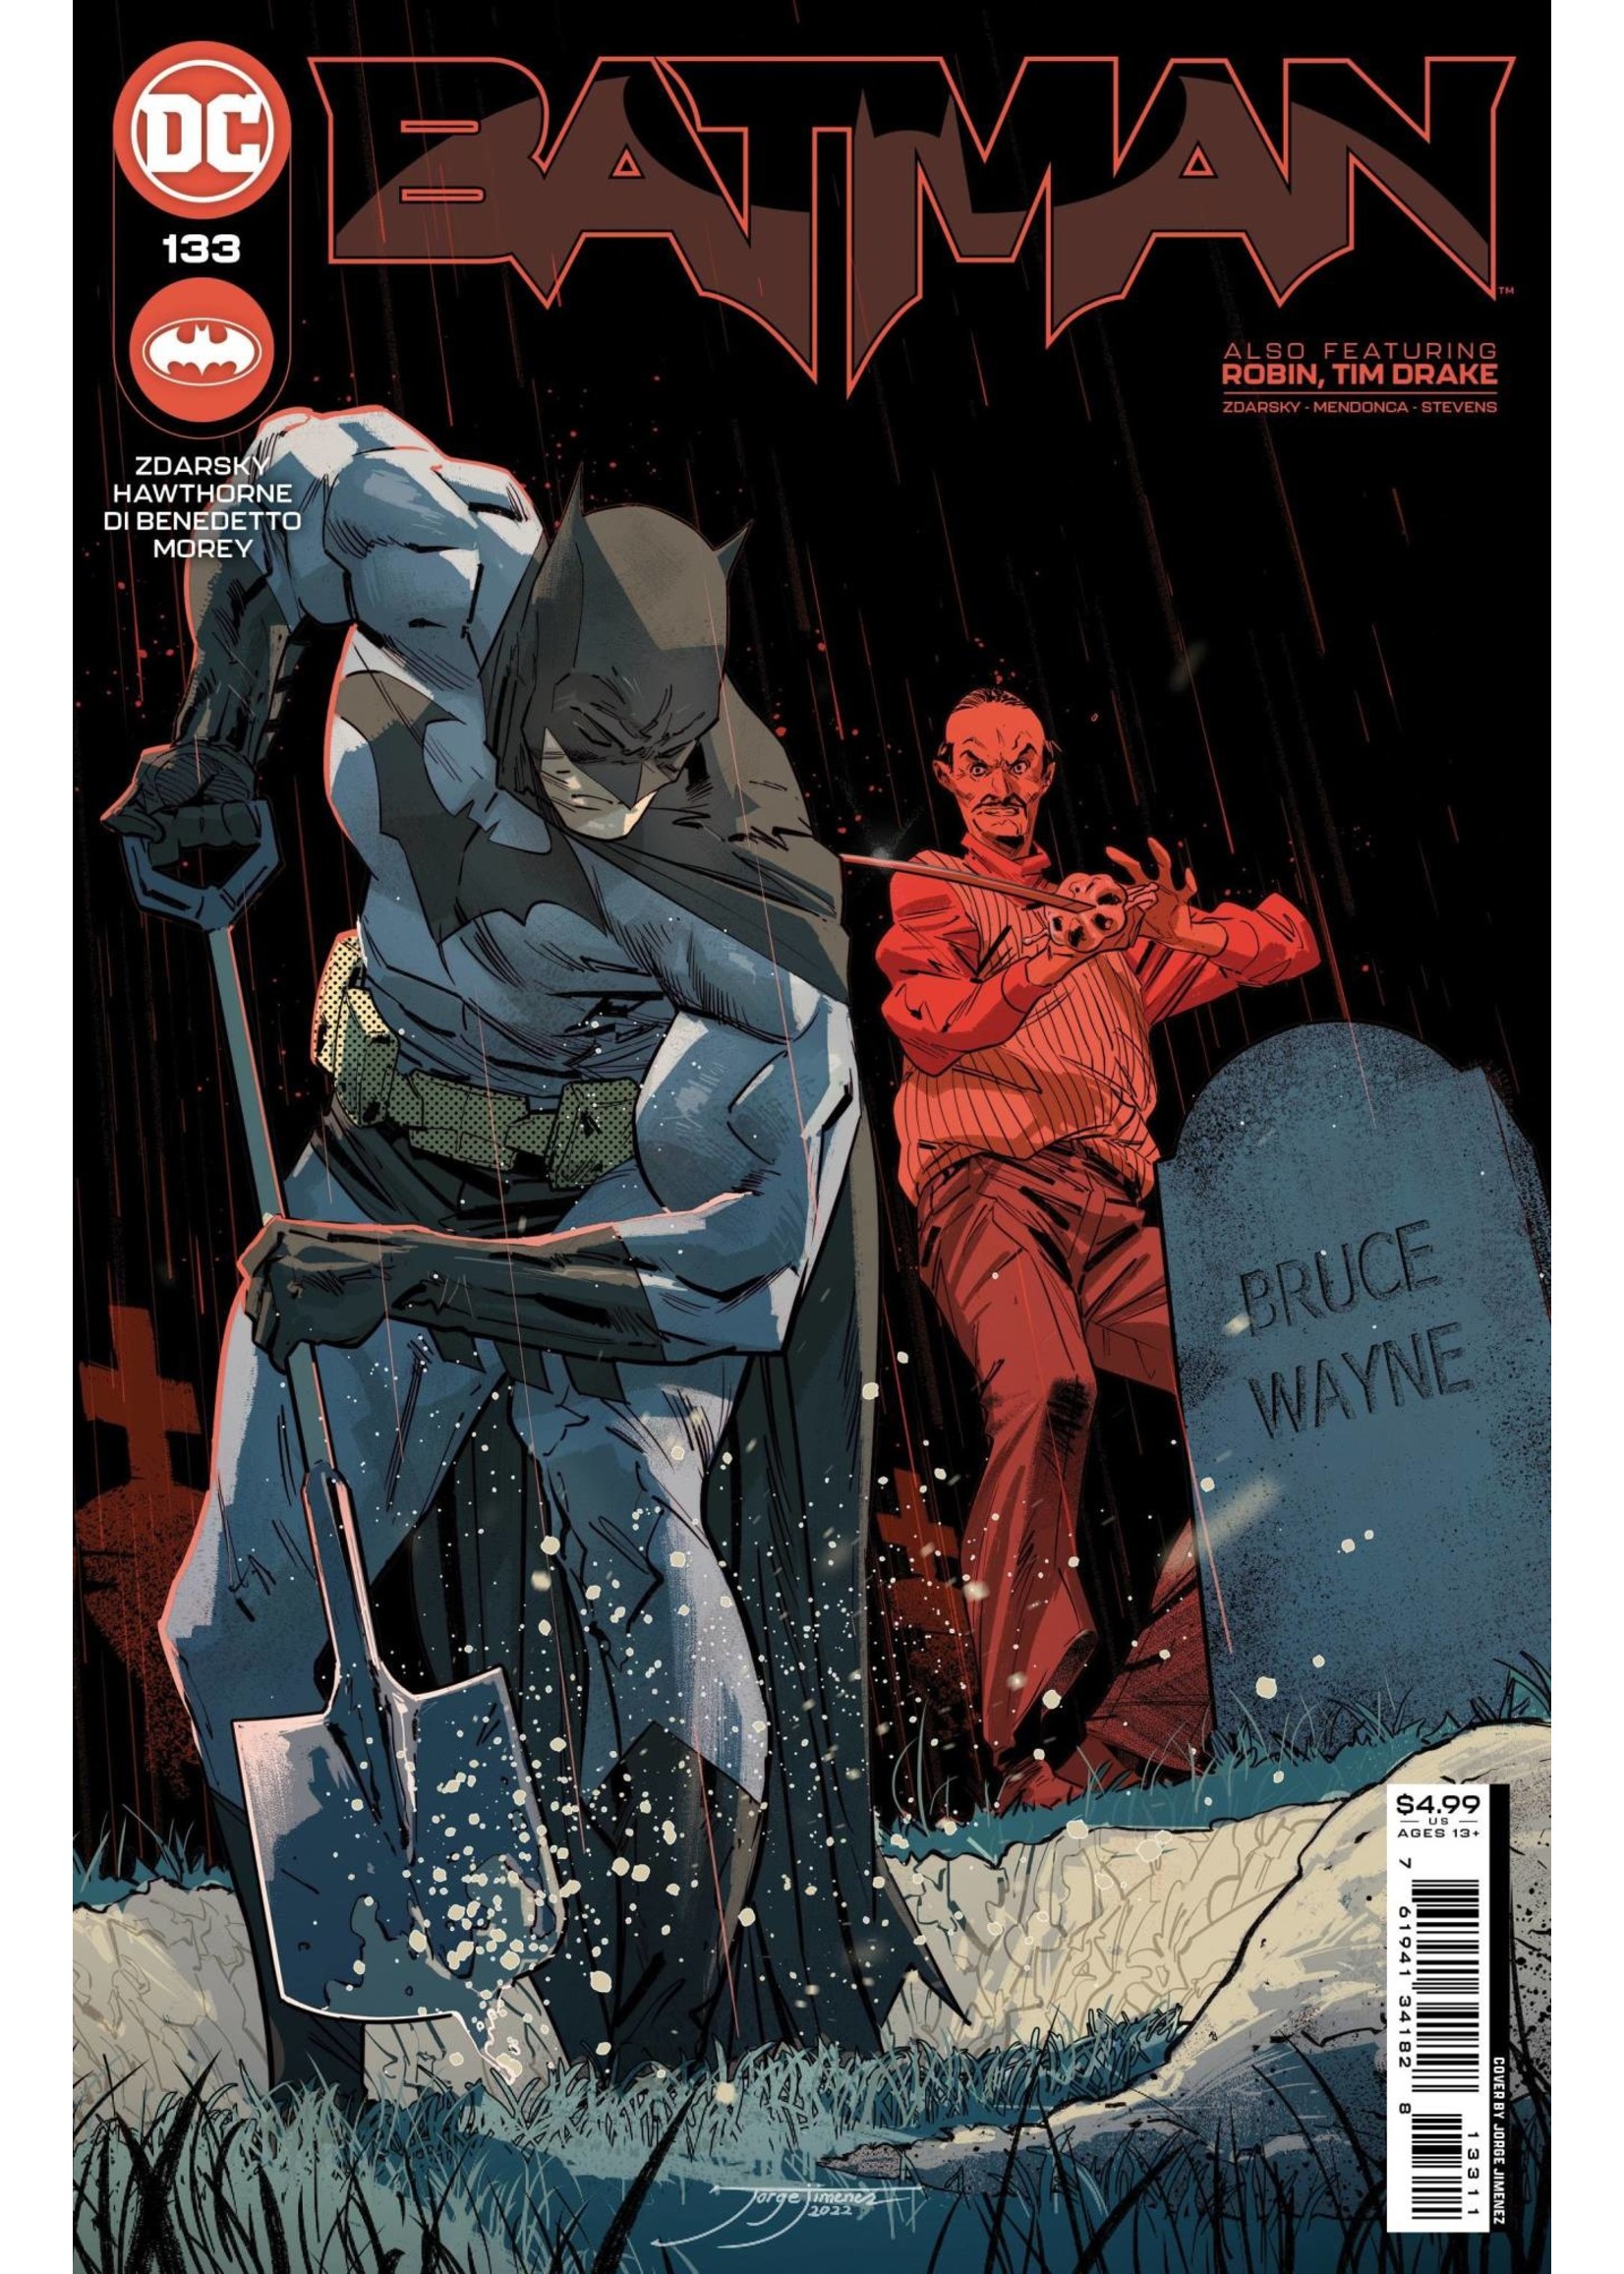 DC COMICS BATMAN #133